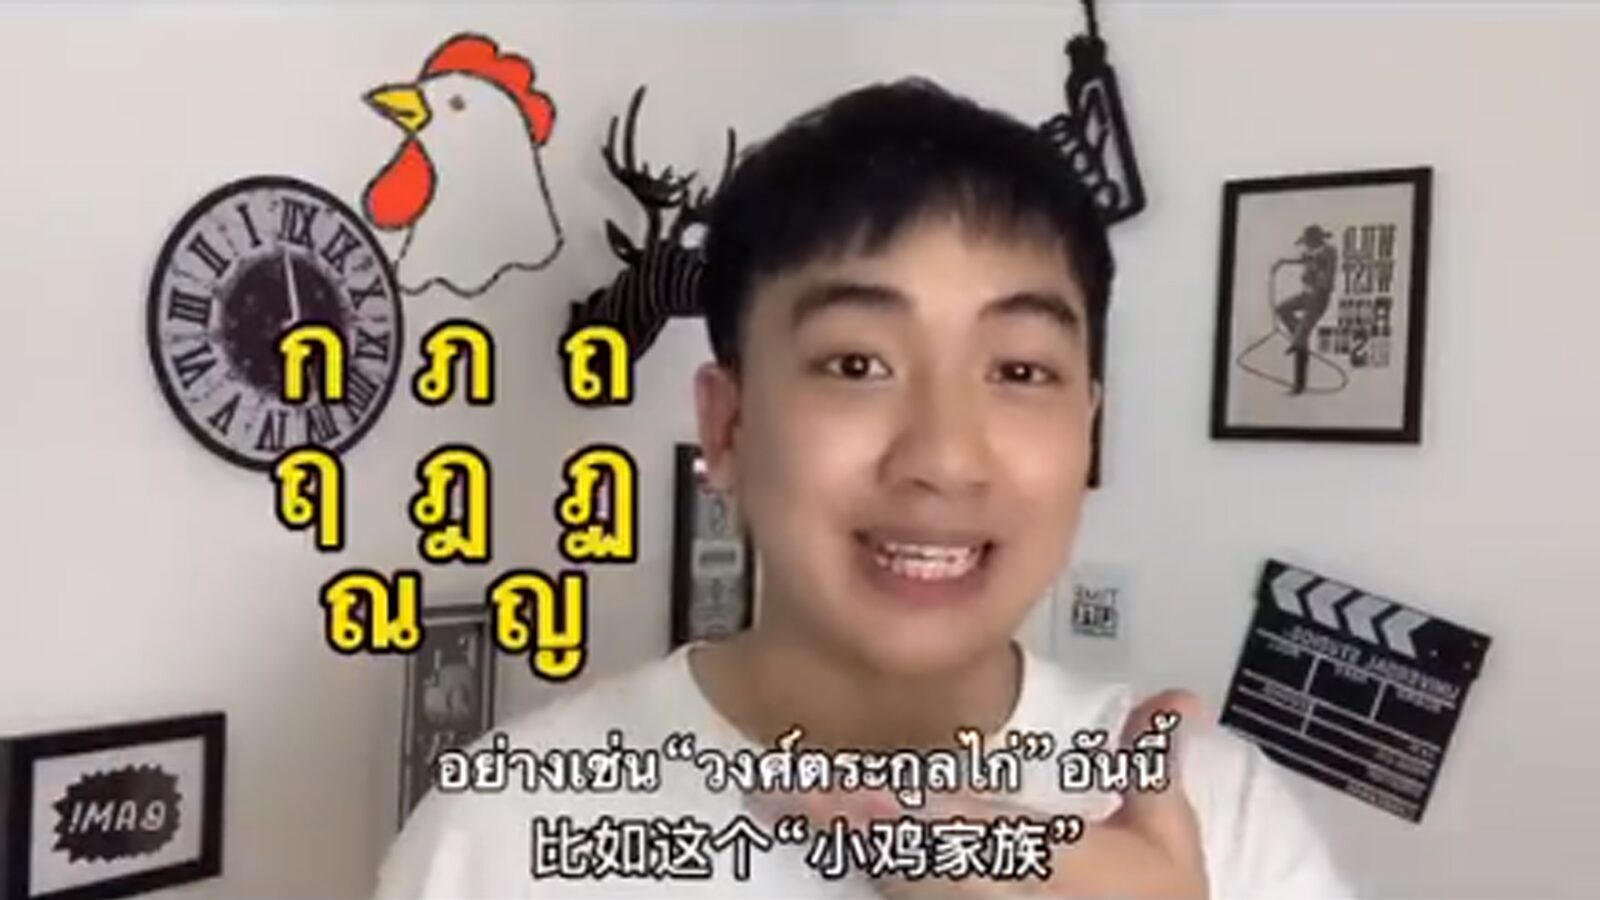 หนุ่มจีนรีวิวภาษาไทย สุดซับซ้อน ทั้งตัวอักษร-การออกเสียง ยิ่งเรียนยิ่งยาก!  | Khaosod | Line Today